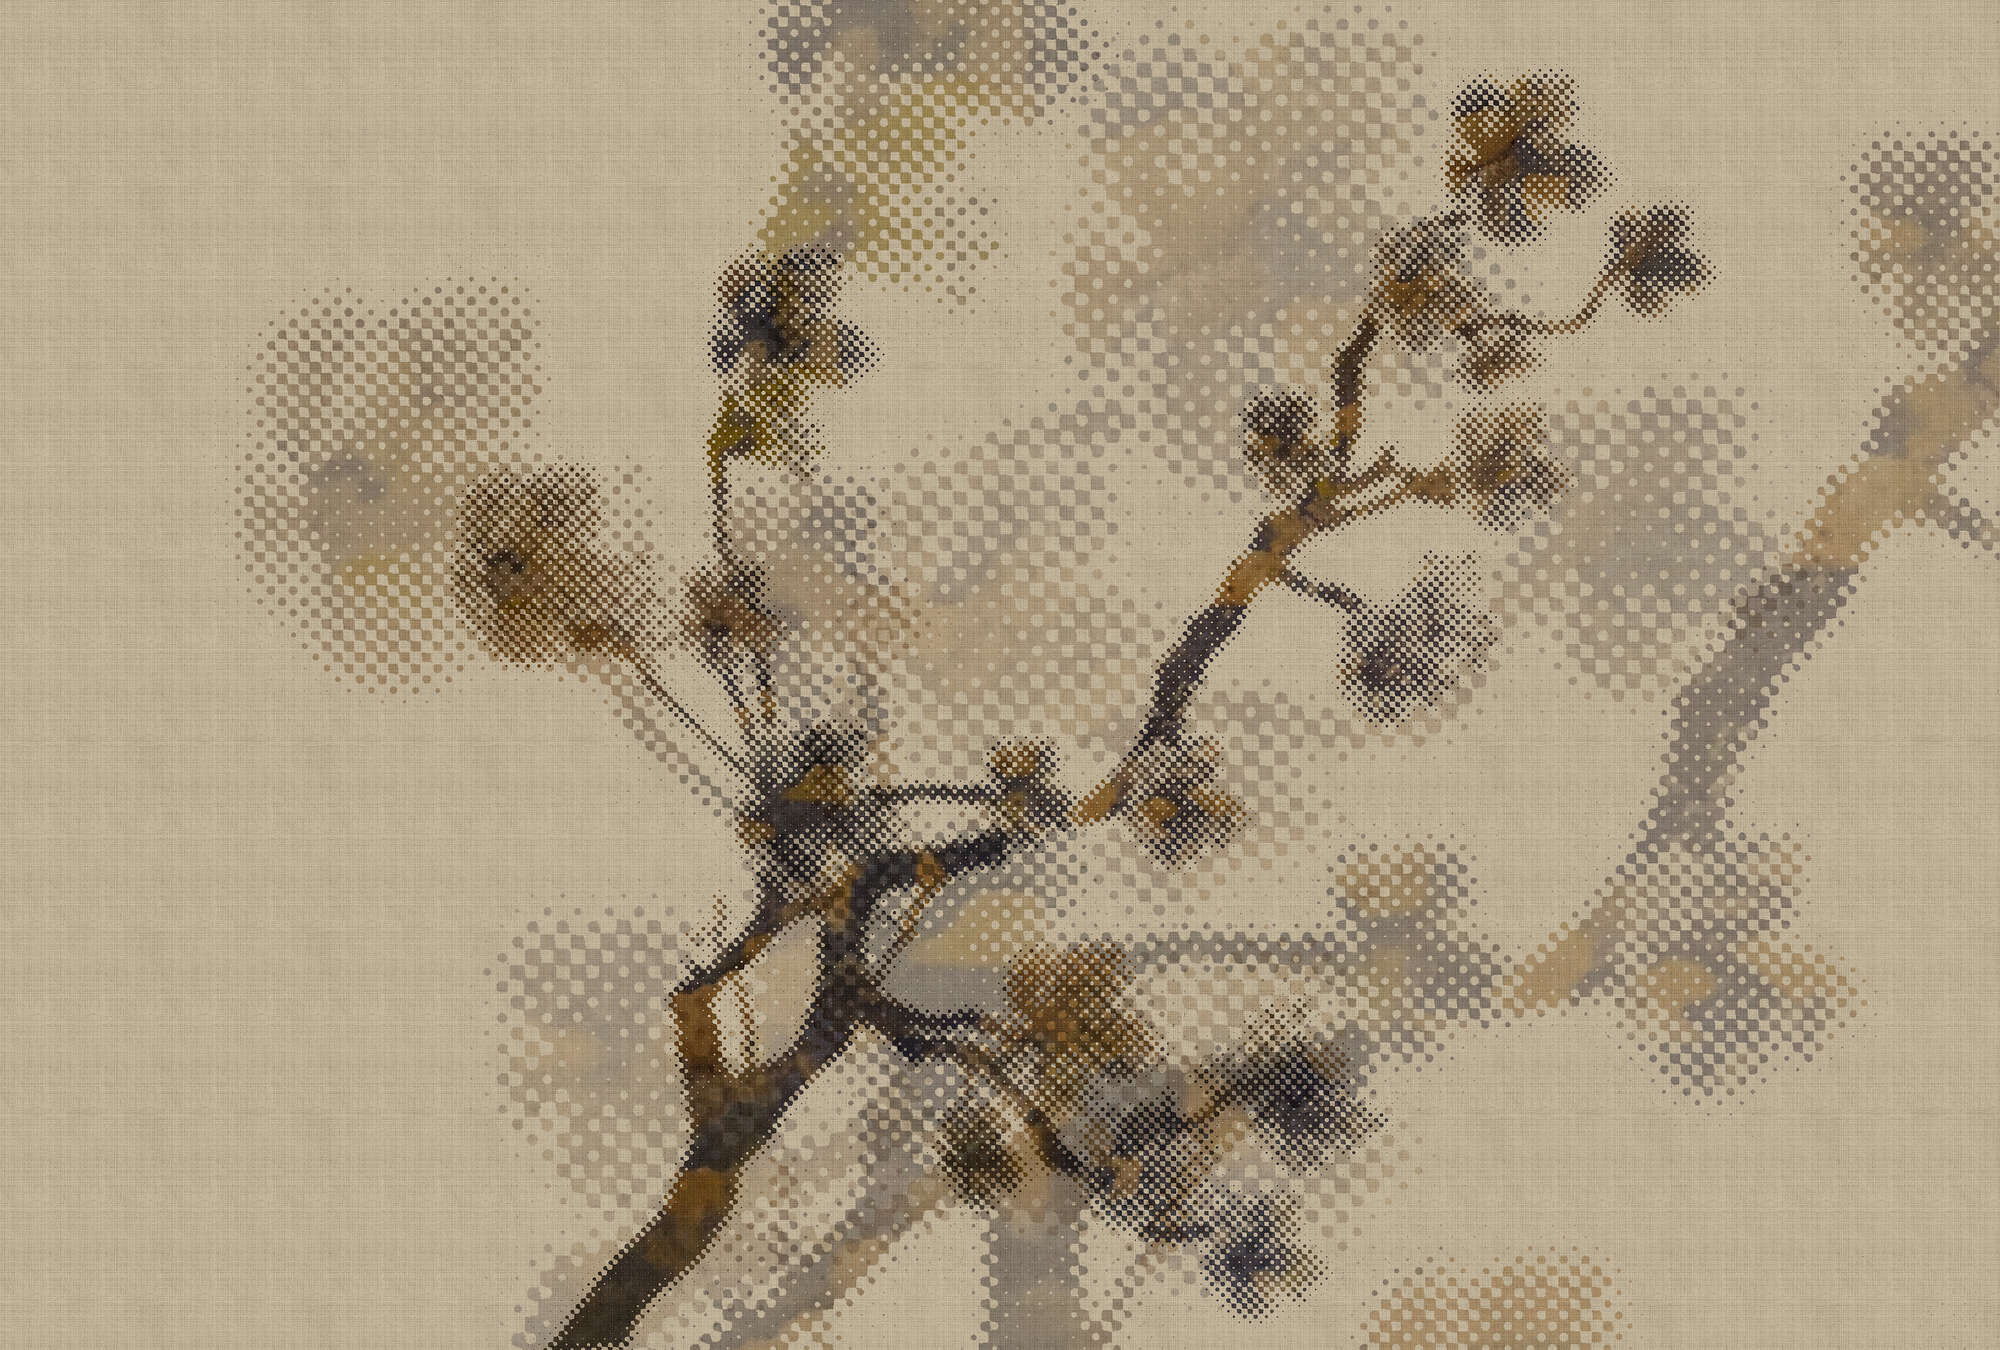             Twigs 2 - Wallpaper in natural linen structure with branch motif & pixel design - Beige | Premium smooth fleece
        